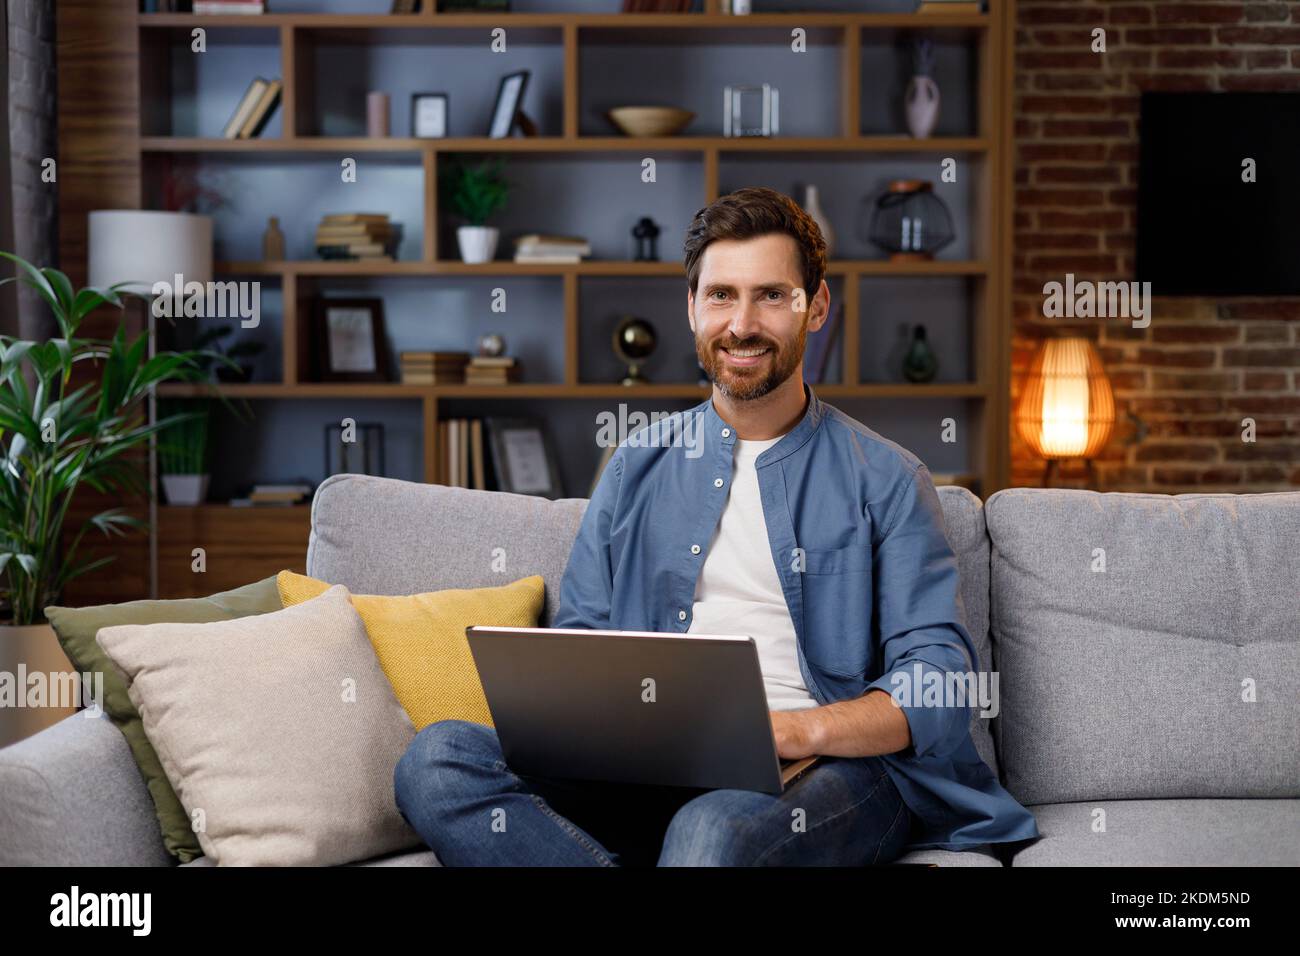 Ein hübscher Mann, der in einer stilvollen Wohnung auf dem Sofa sitzt und am Laptop arbeitet. Arbeiten im Internet, Nutzung sozialer Netzwerke, Unterhaltung in der Wohnung Stockfoto